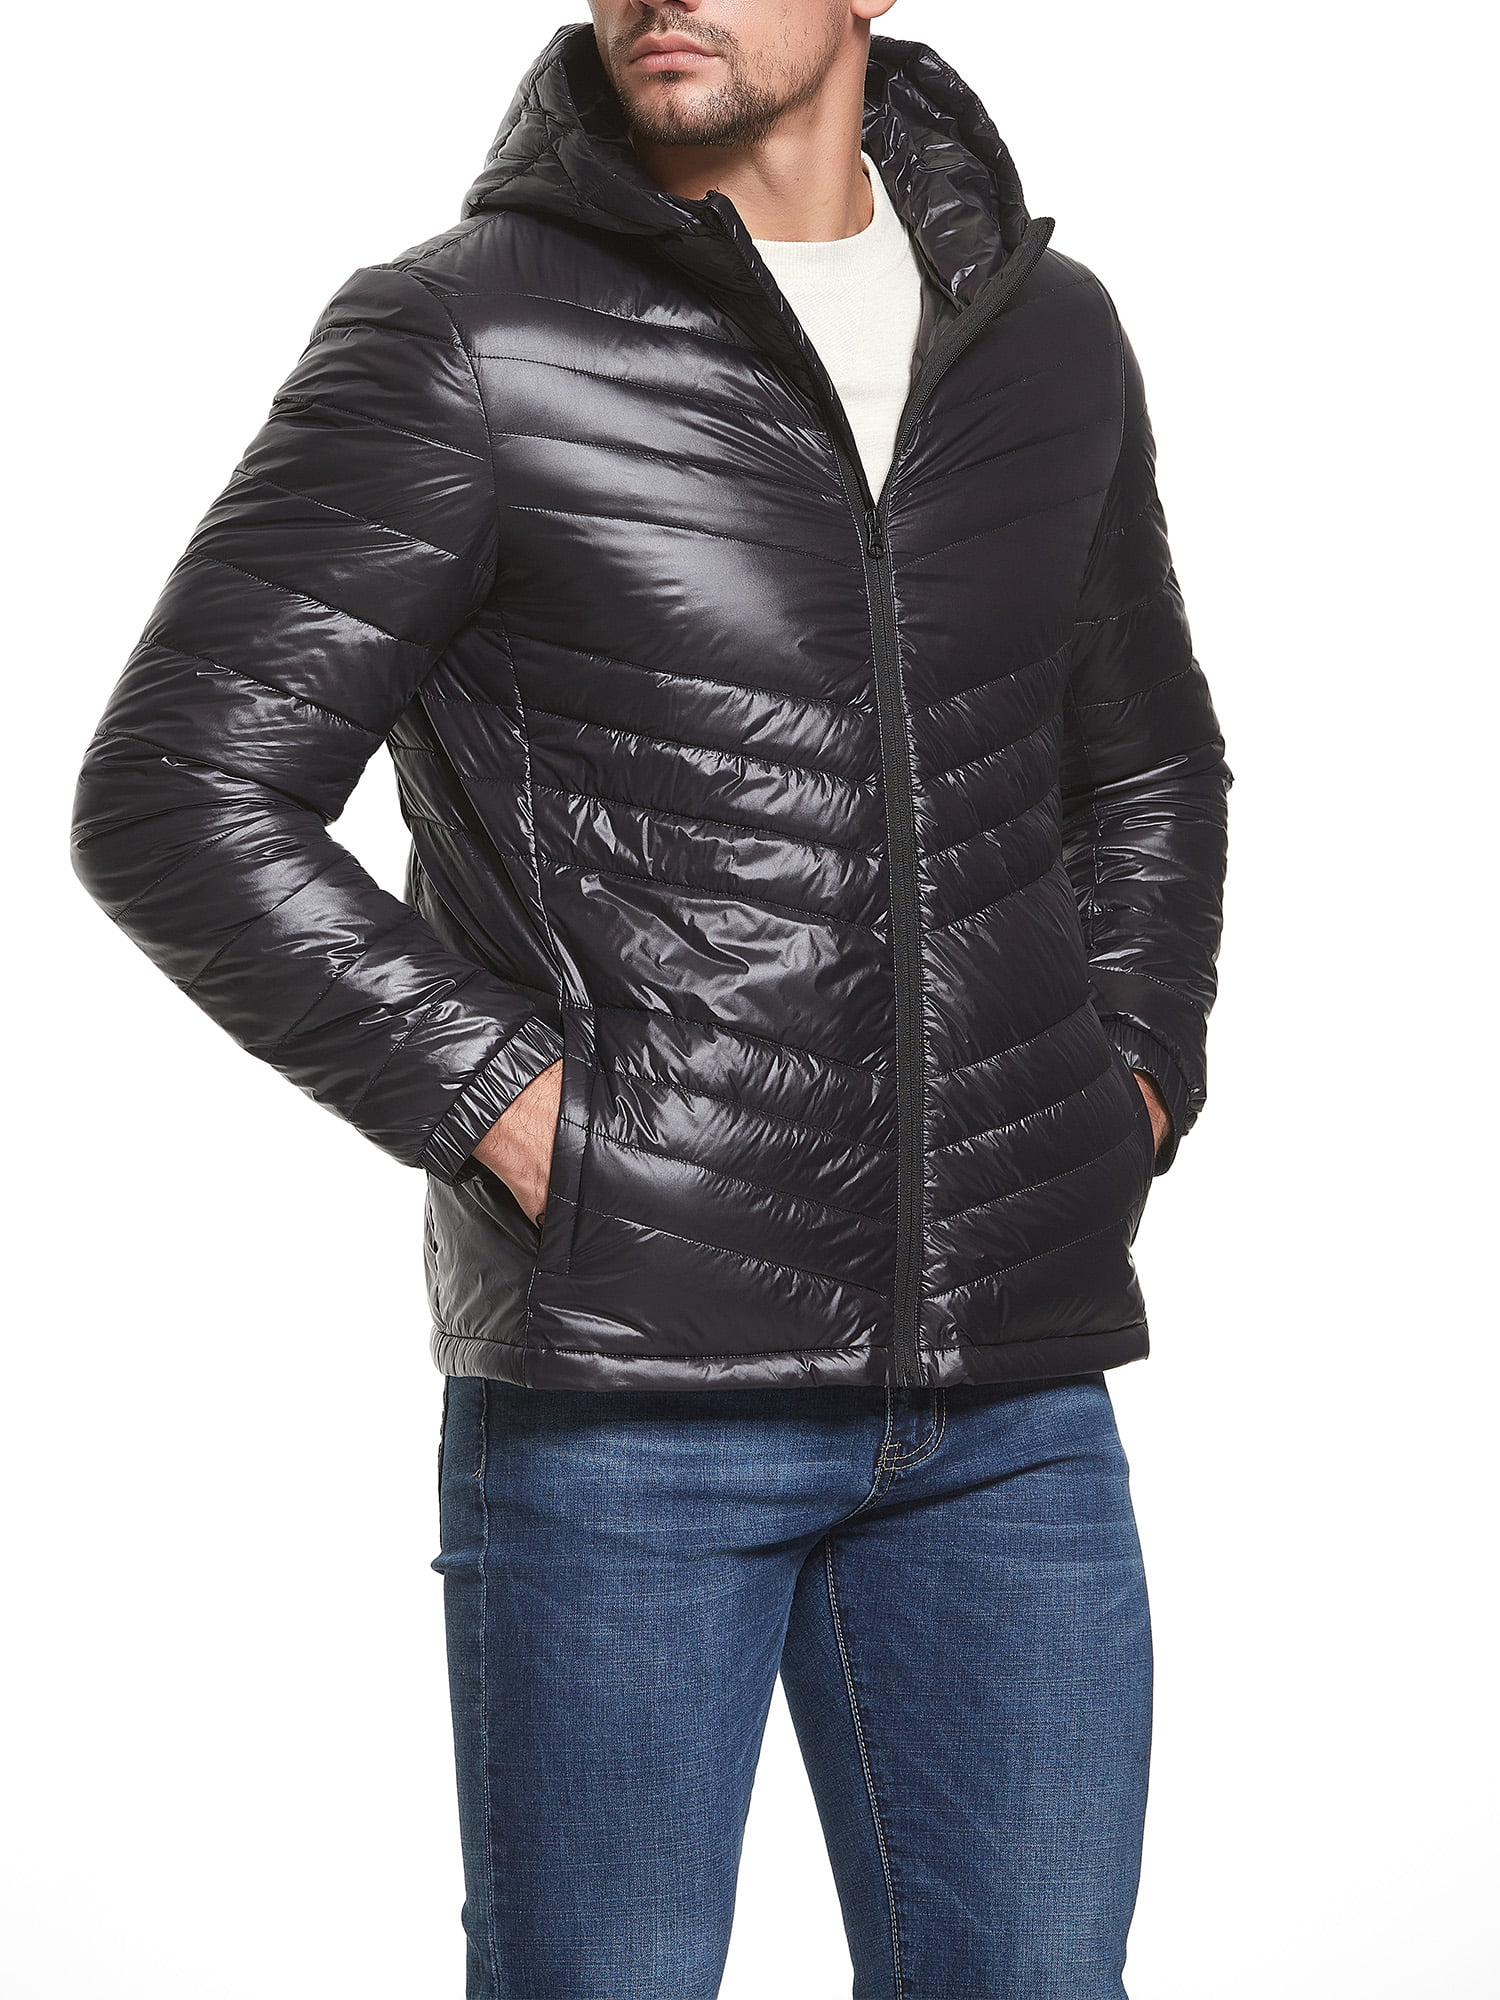 Oberora-Men Lightweight Packable Long Hooded Down Puffer Coats Jacket Outwear 